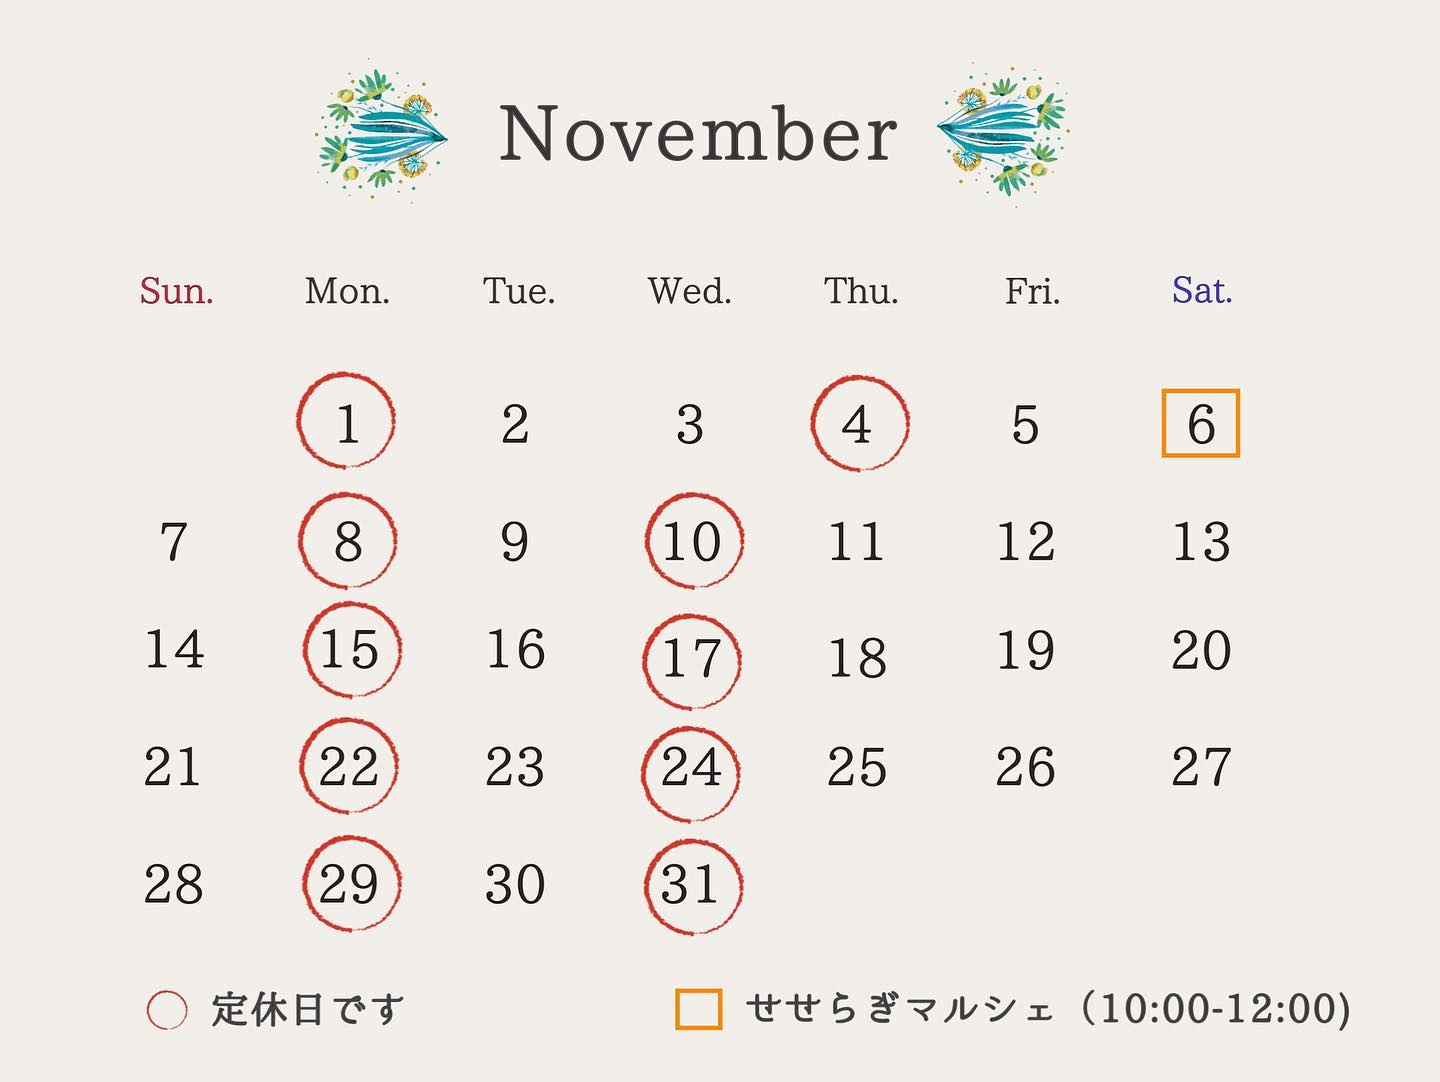 11月の営業日です3日（水）も営業いたします。6日（土）は多摩川駅前のせせらぎ館でマルシェもします️前回はマフィンもパンも完売でしたので、気合い入れてたくさん準備しますみなさま、今月もよろしくお願い申し上げます。